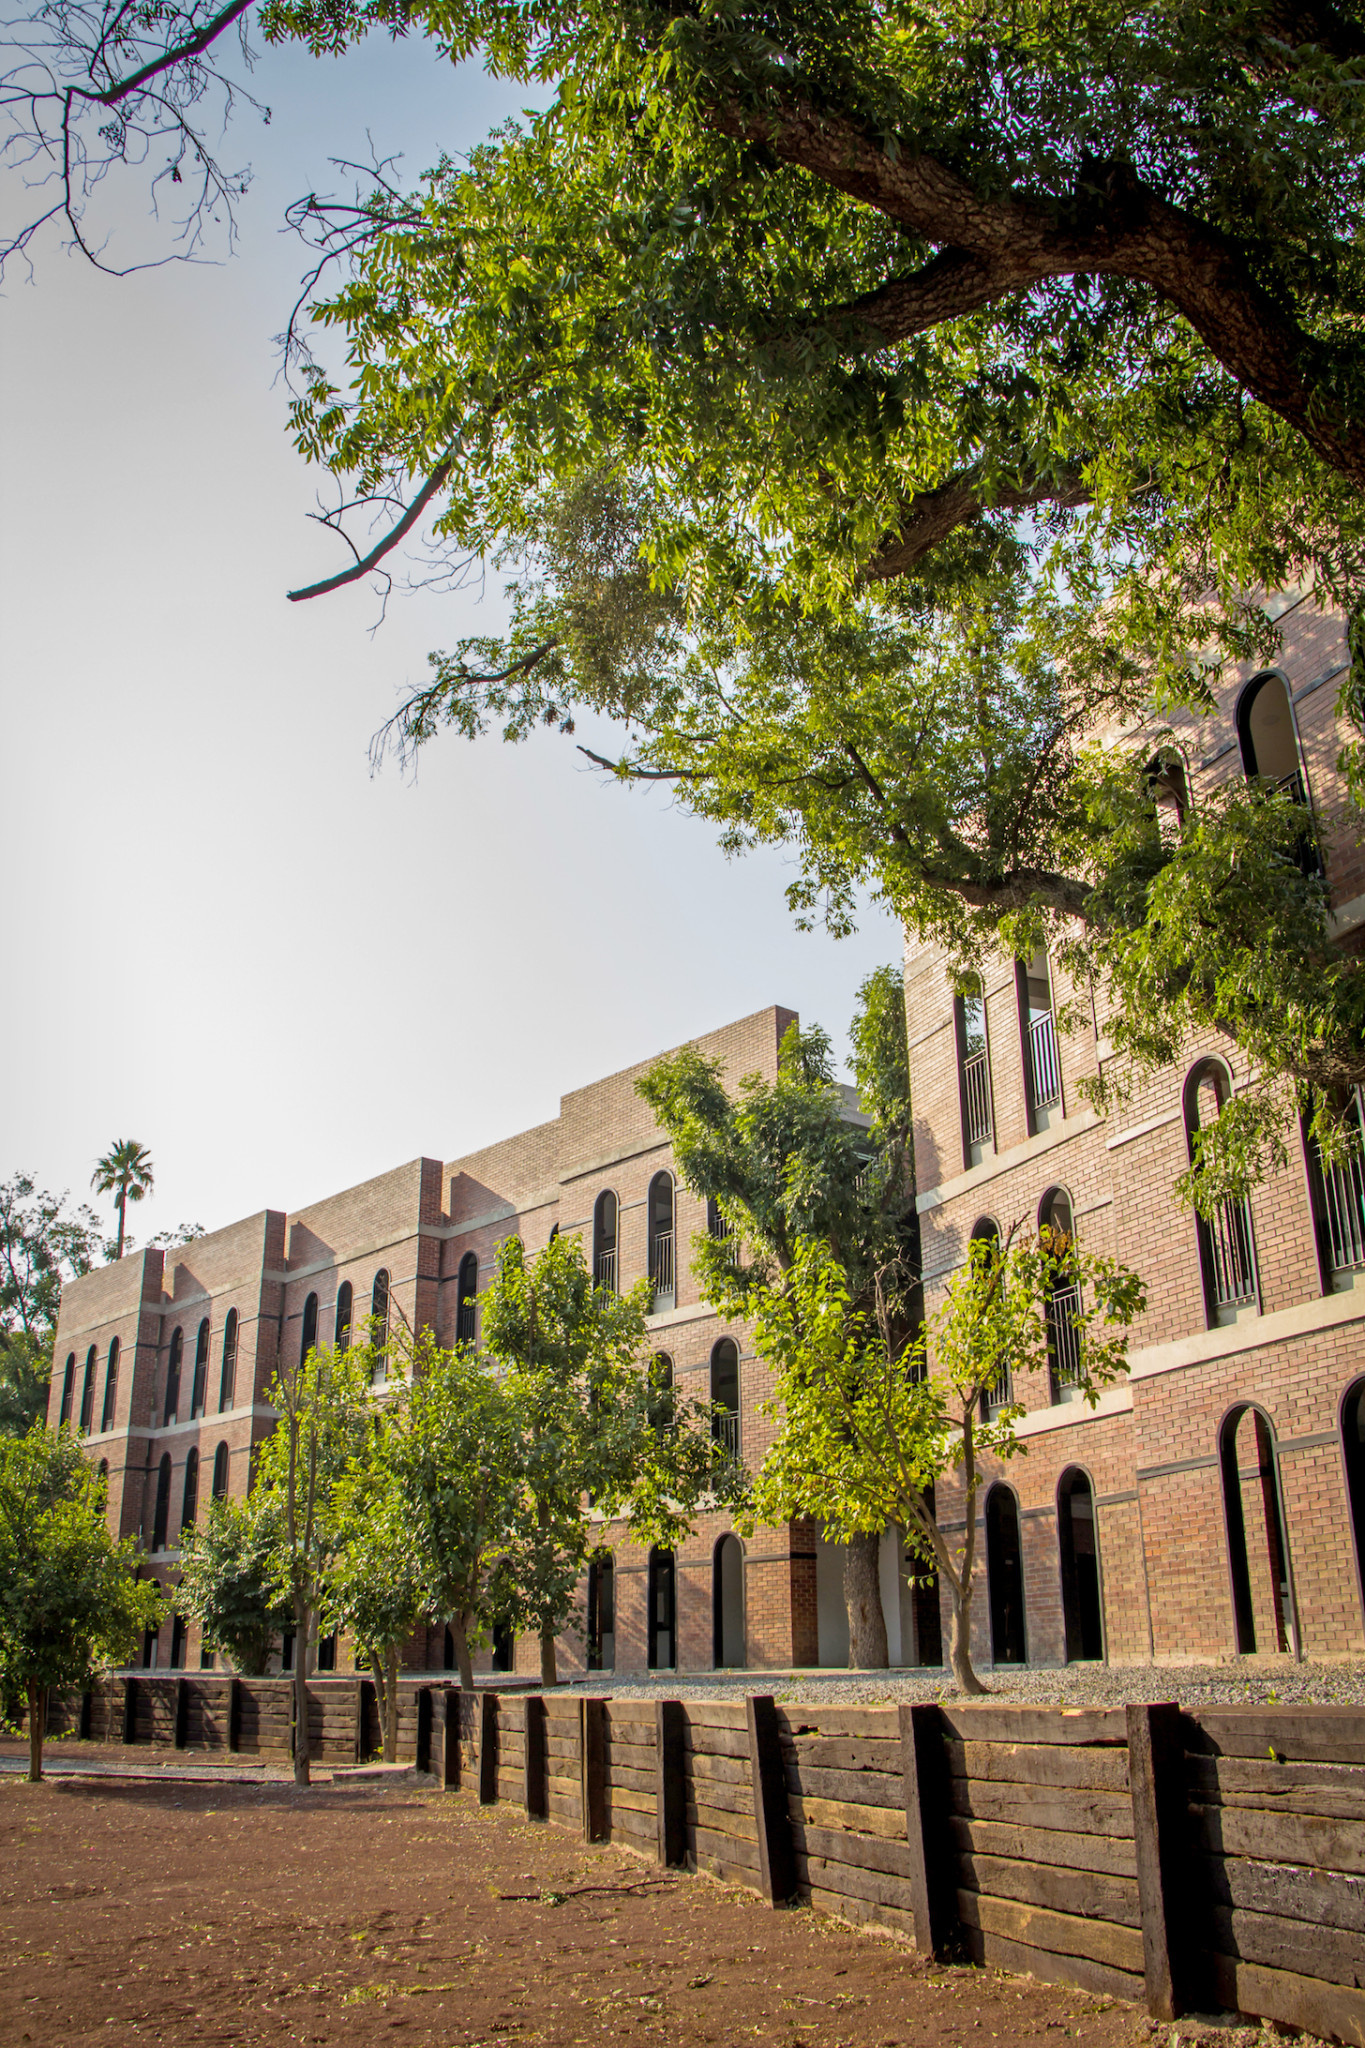 $!Destaca a Nivel Internacional el Campus de la Universidad Carolina por su arquitectura